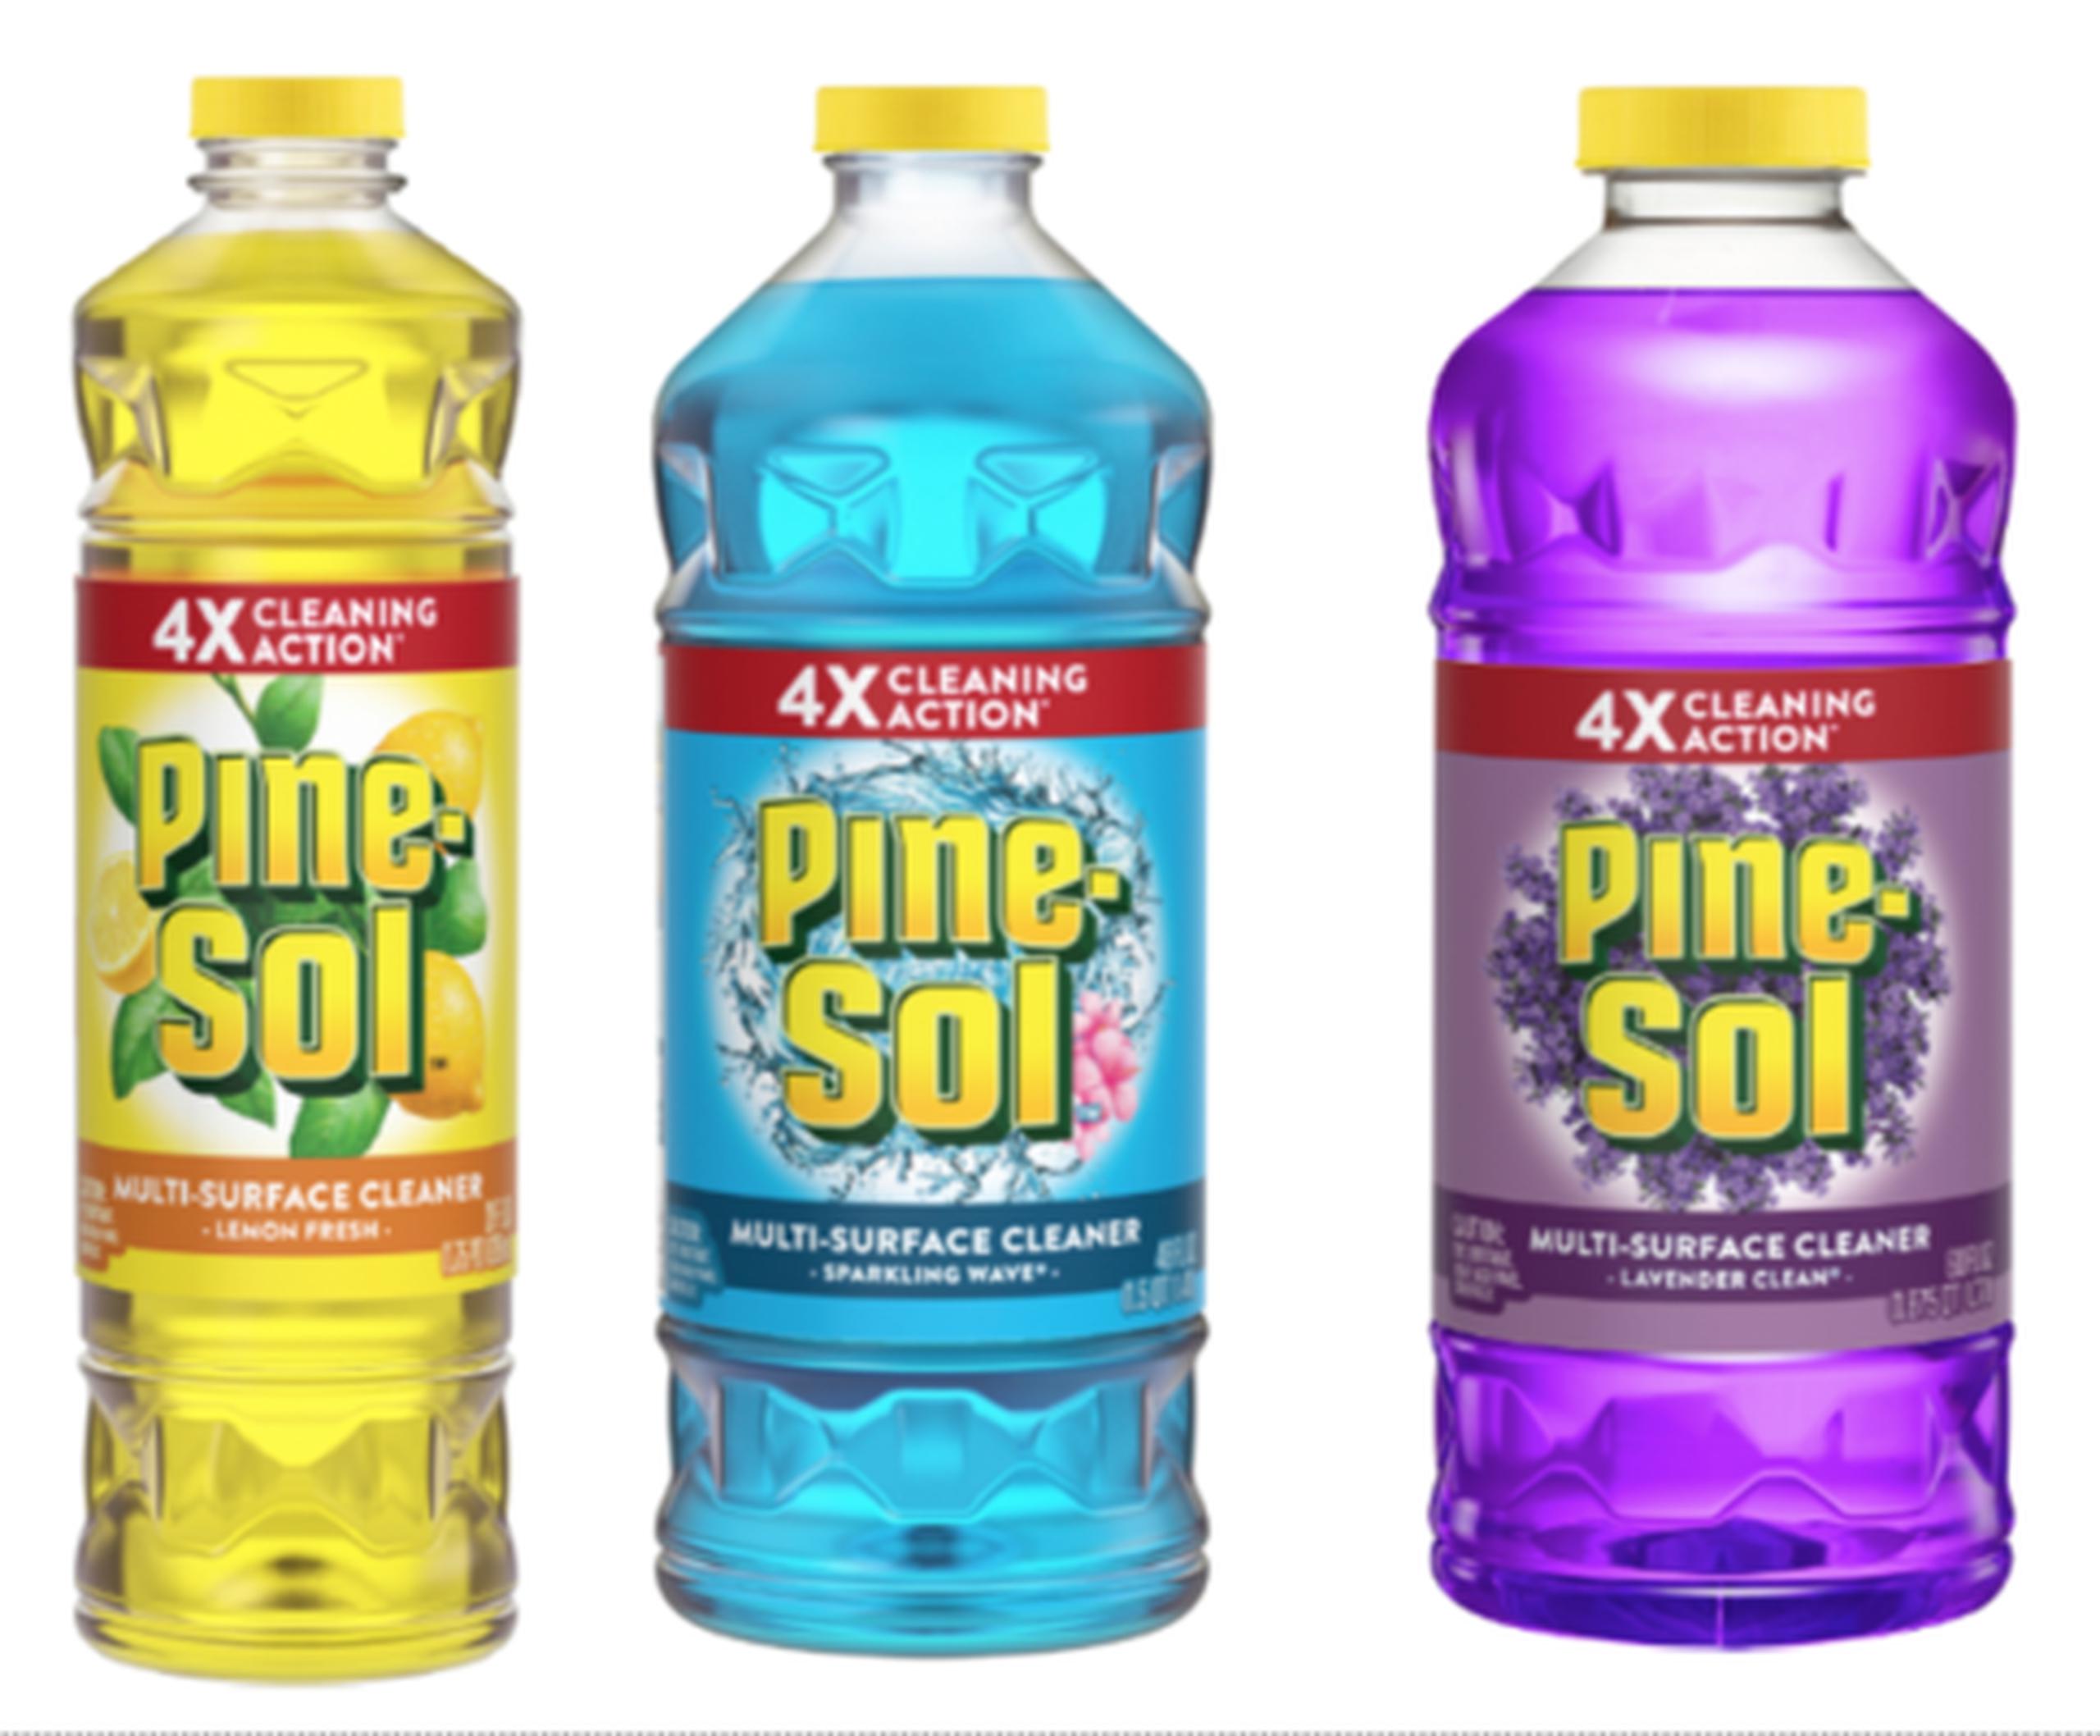 Algunos de los productos retirados de Pine-Sol, según la Comisión de Seguridad de Productos del Consumidor de Estados Unidos.